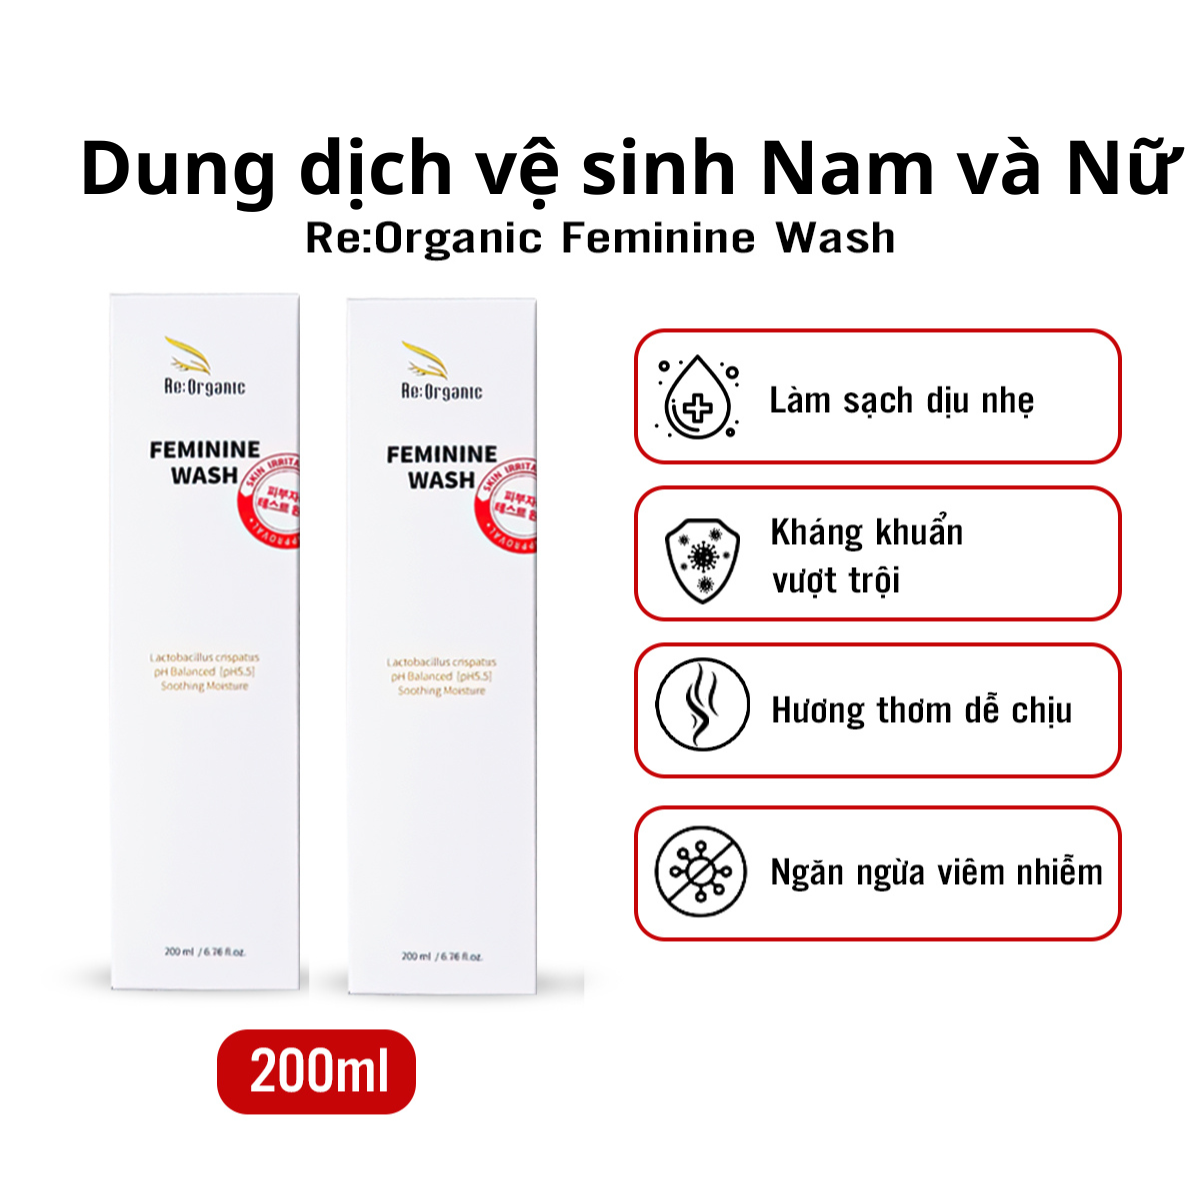 Vệ sinh nam Re:Organic Feminine Wash 200ml Hàn Quốc, gel làm sạch, khử mùi hôi, cân bằng pH, dung dịch vệ sinh phụ khoa dùng cho cả Nam và Nữ - Combo 2 hộp